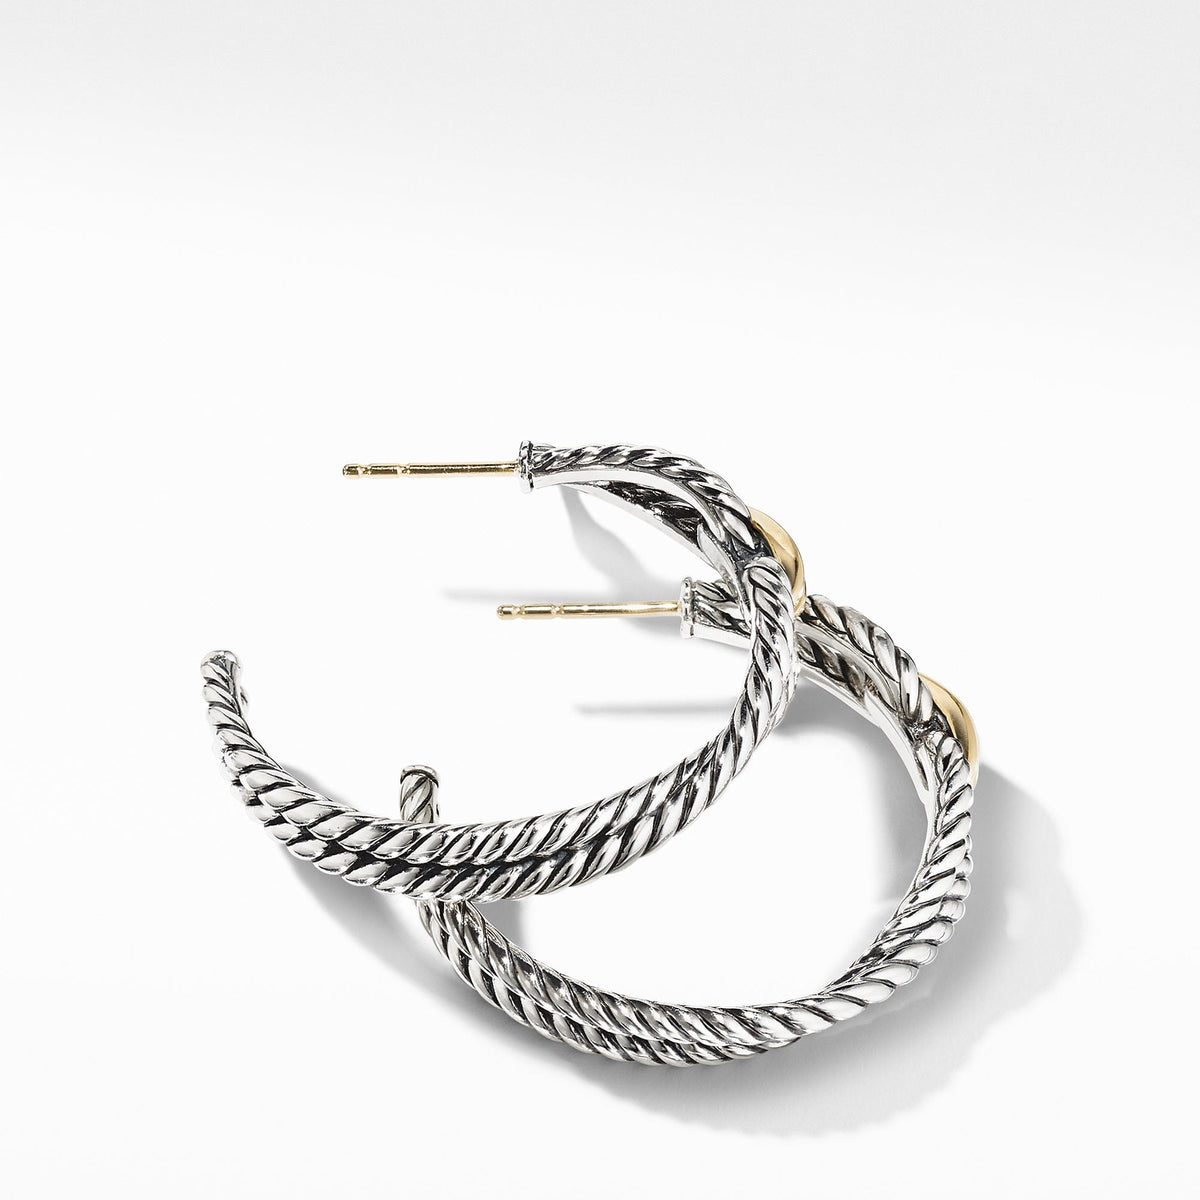 Cable Loop Hoop Earrings with 18K Gold